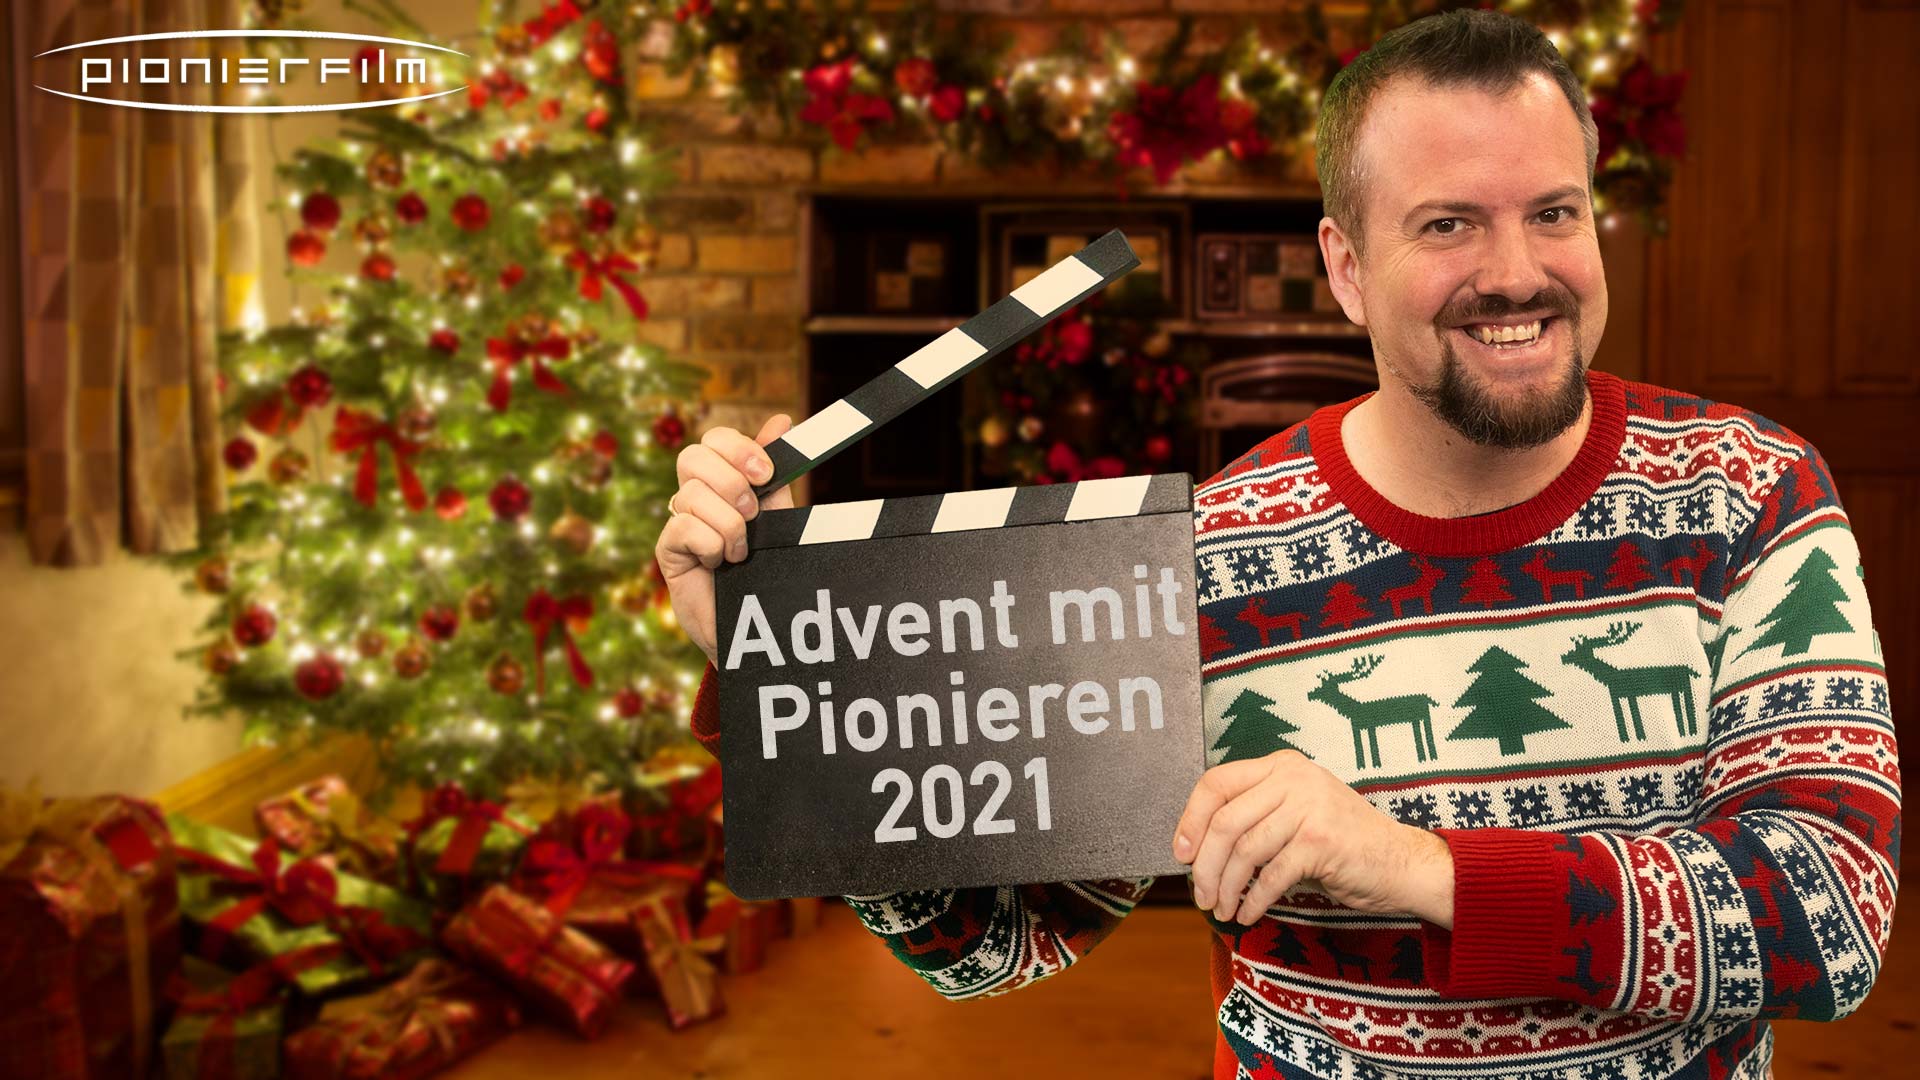 Der Pionierfilm Adventskalender 2021 – 24 Tipps und Tricks rund um Video, Audio und Livestream.